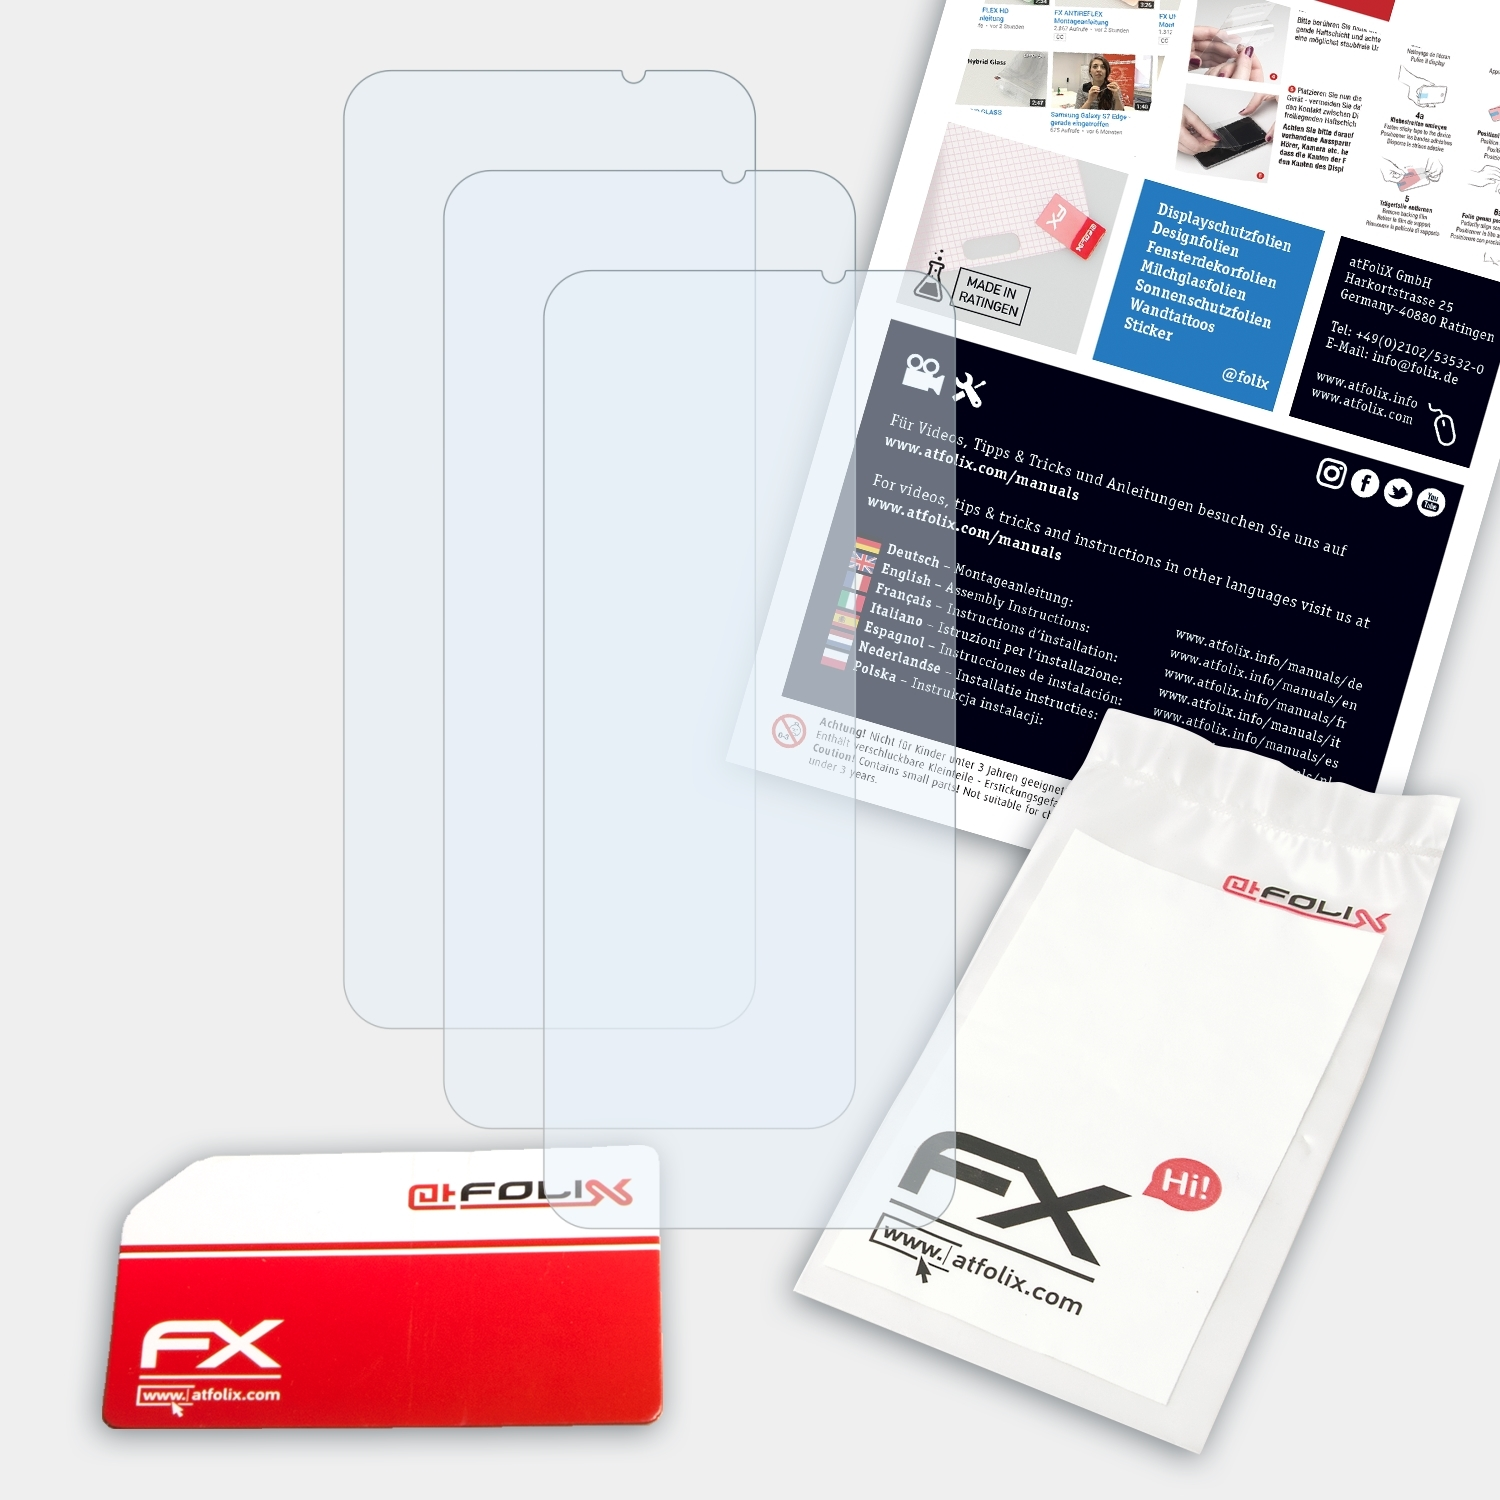 3) 3x Shark Xiaomi Black FX-Clear ATFOLIX Displayschutz(für